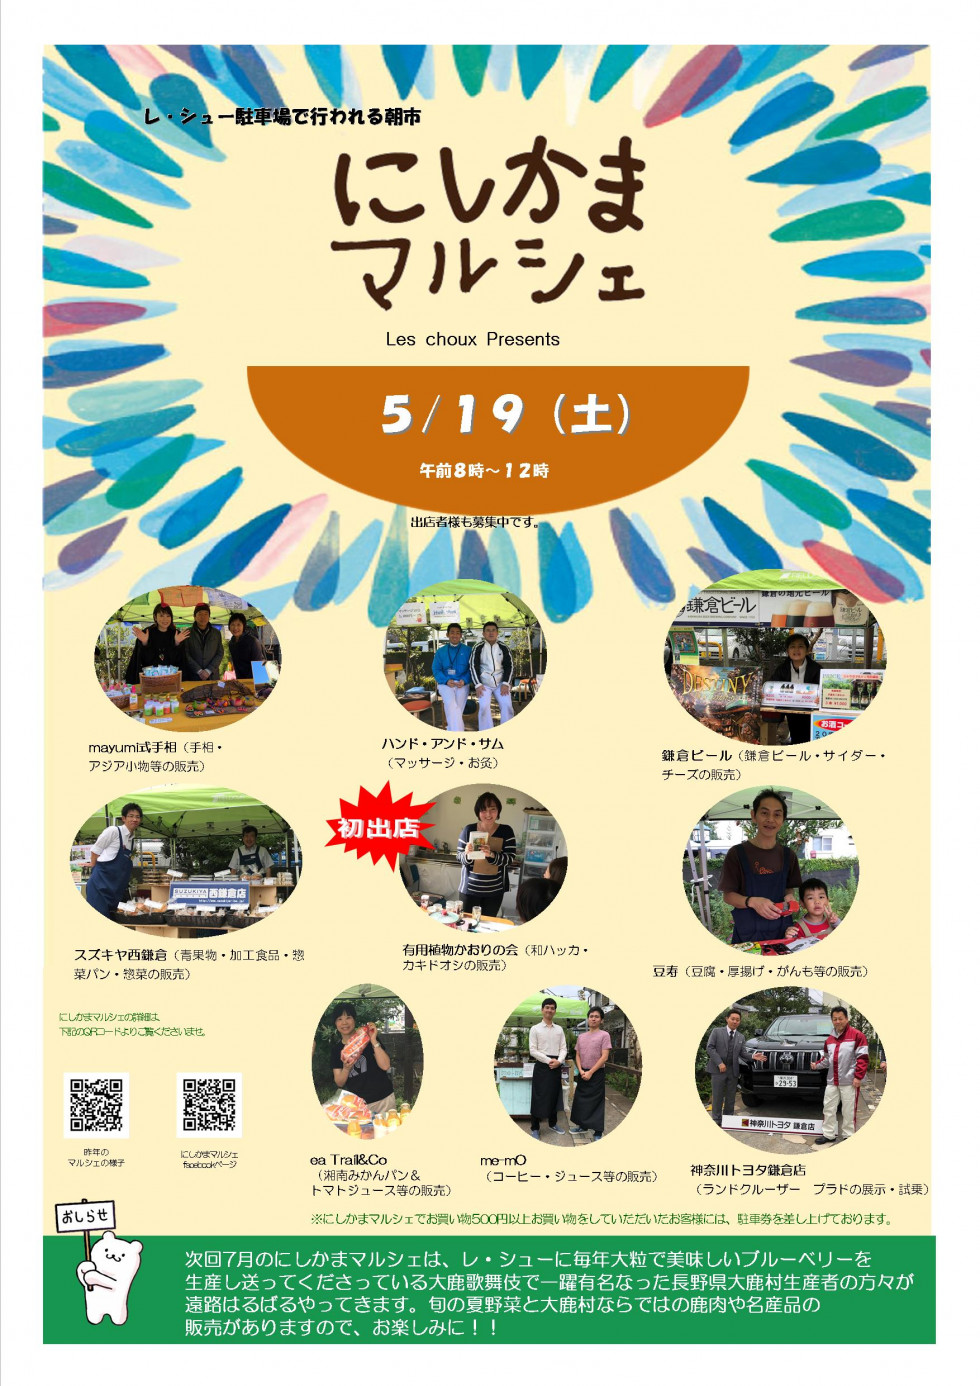 ５月19日 にしかまマルシェの開催です レ シュー 西鎌倉 湘南にあるケーキとお菓子のお店 Les Choux